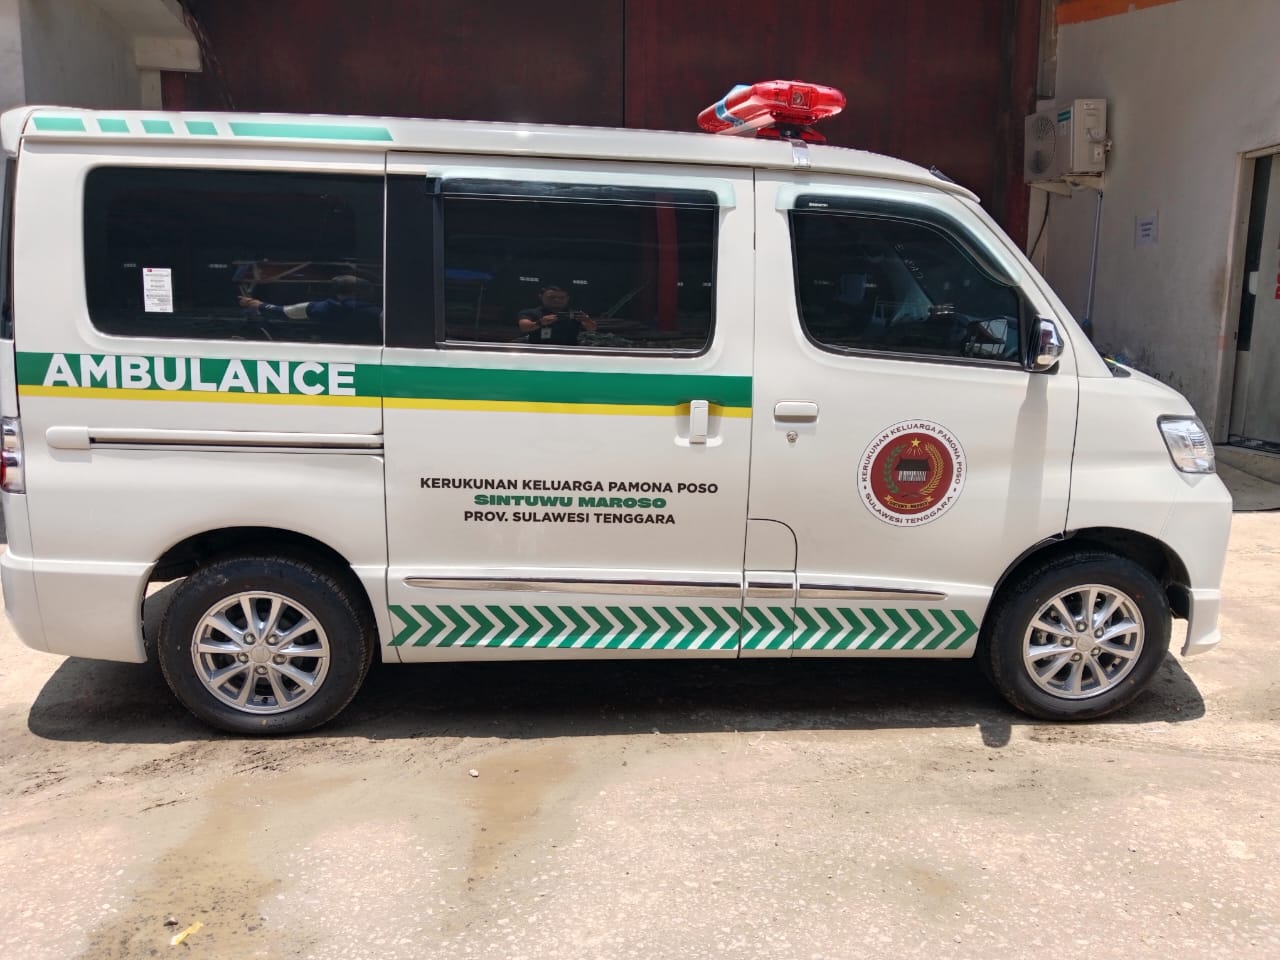 Harga Bengkel Karoseri Ambulance Berkualitas Jawa Timur